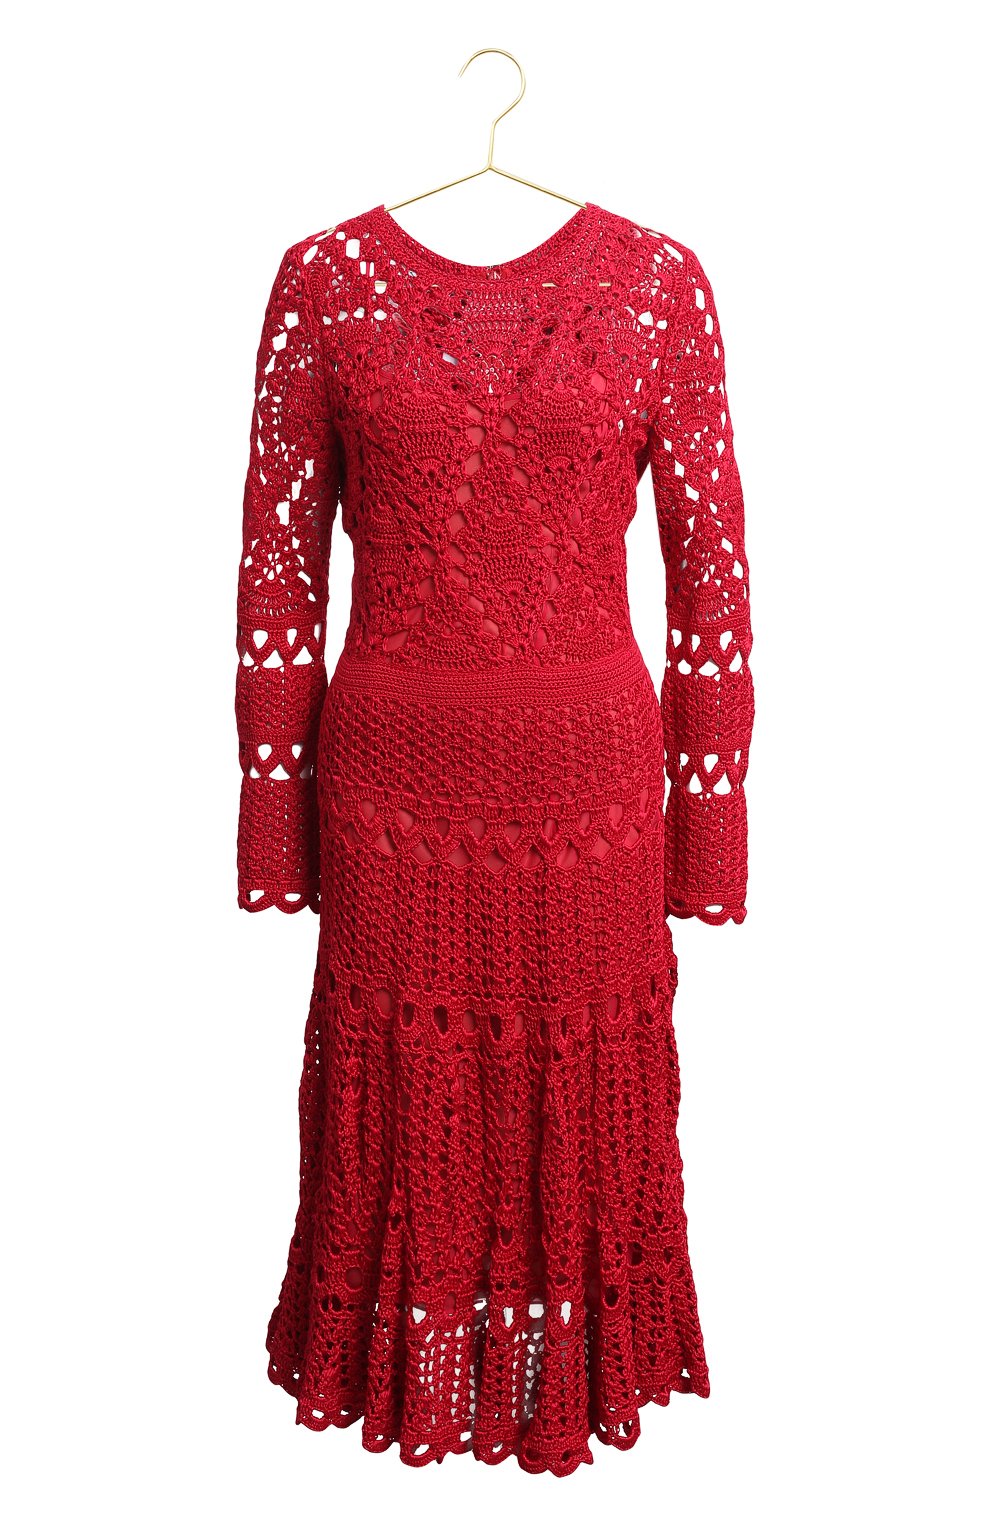 Шелковое платье | Oscar de la Renta | Красный - 1